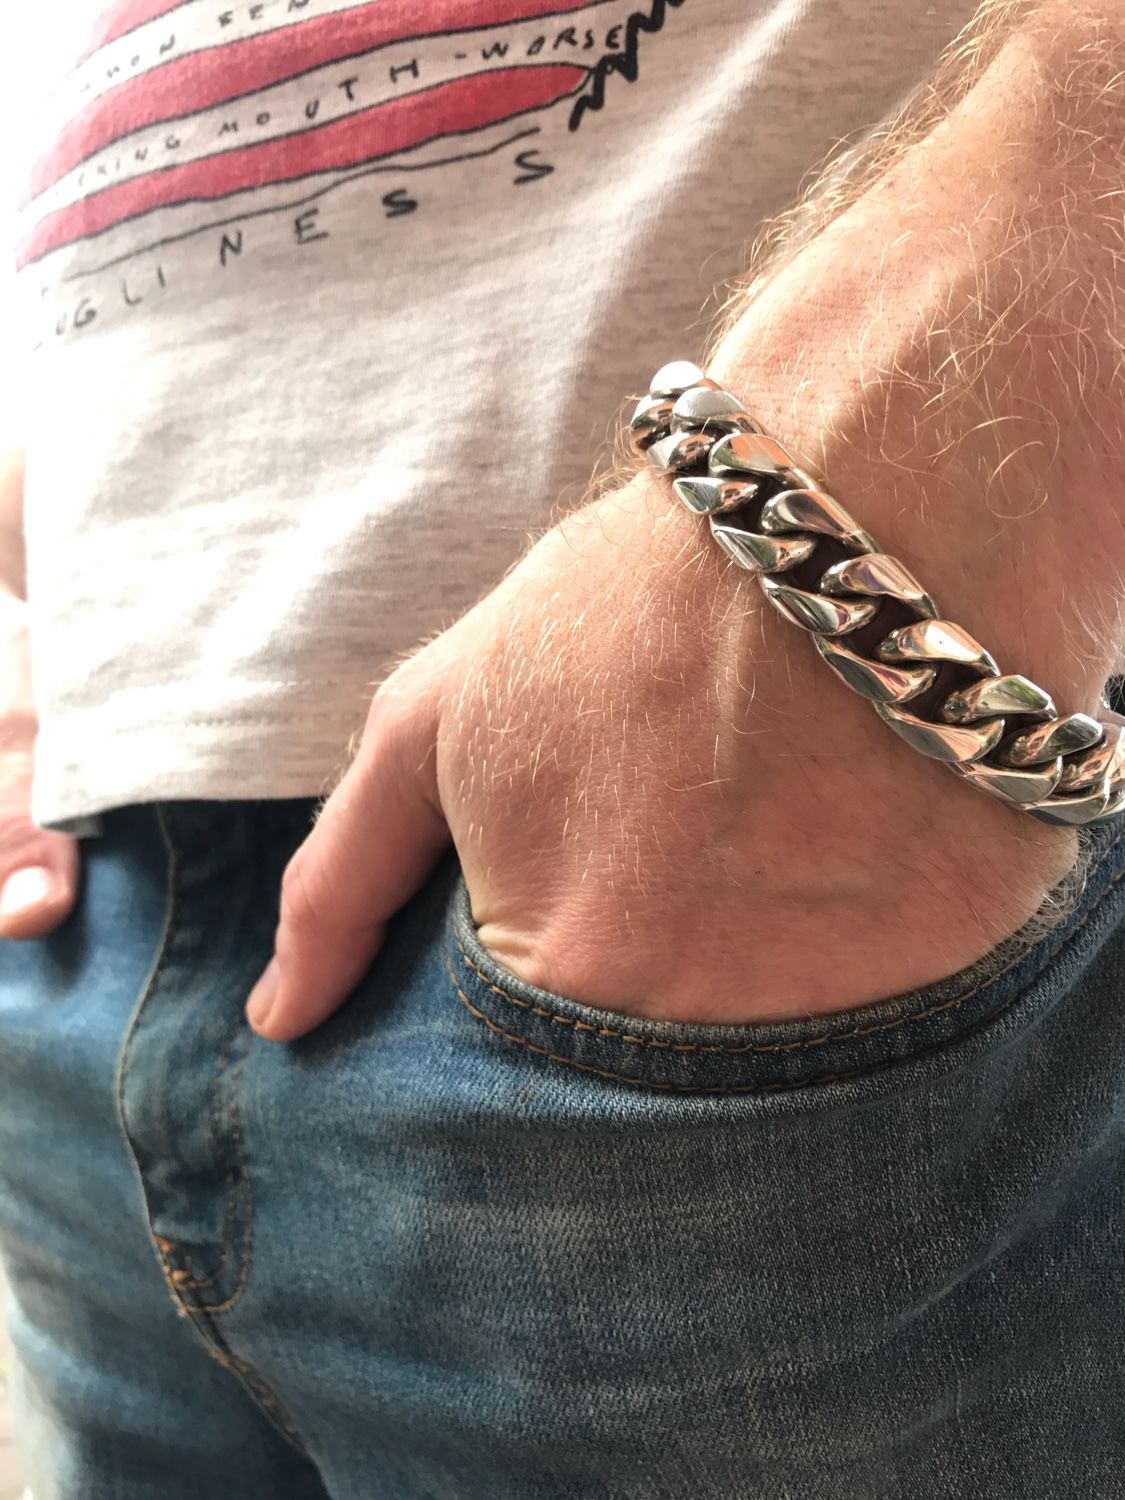 Серебряные браслеты мужские толстые